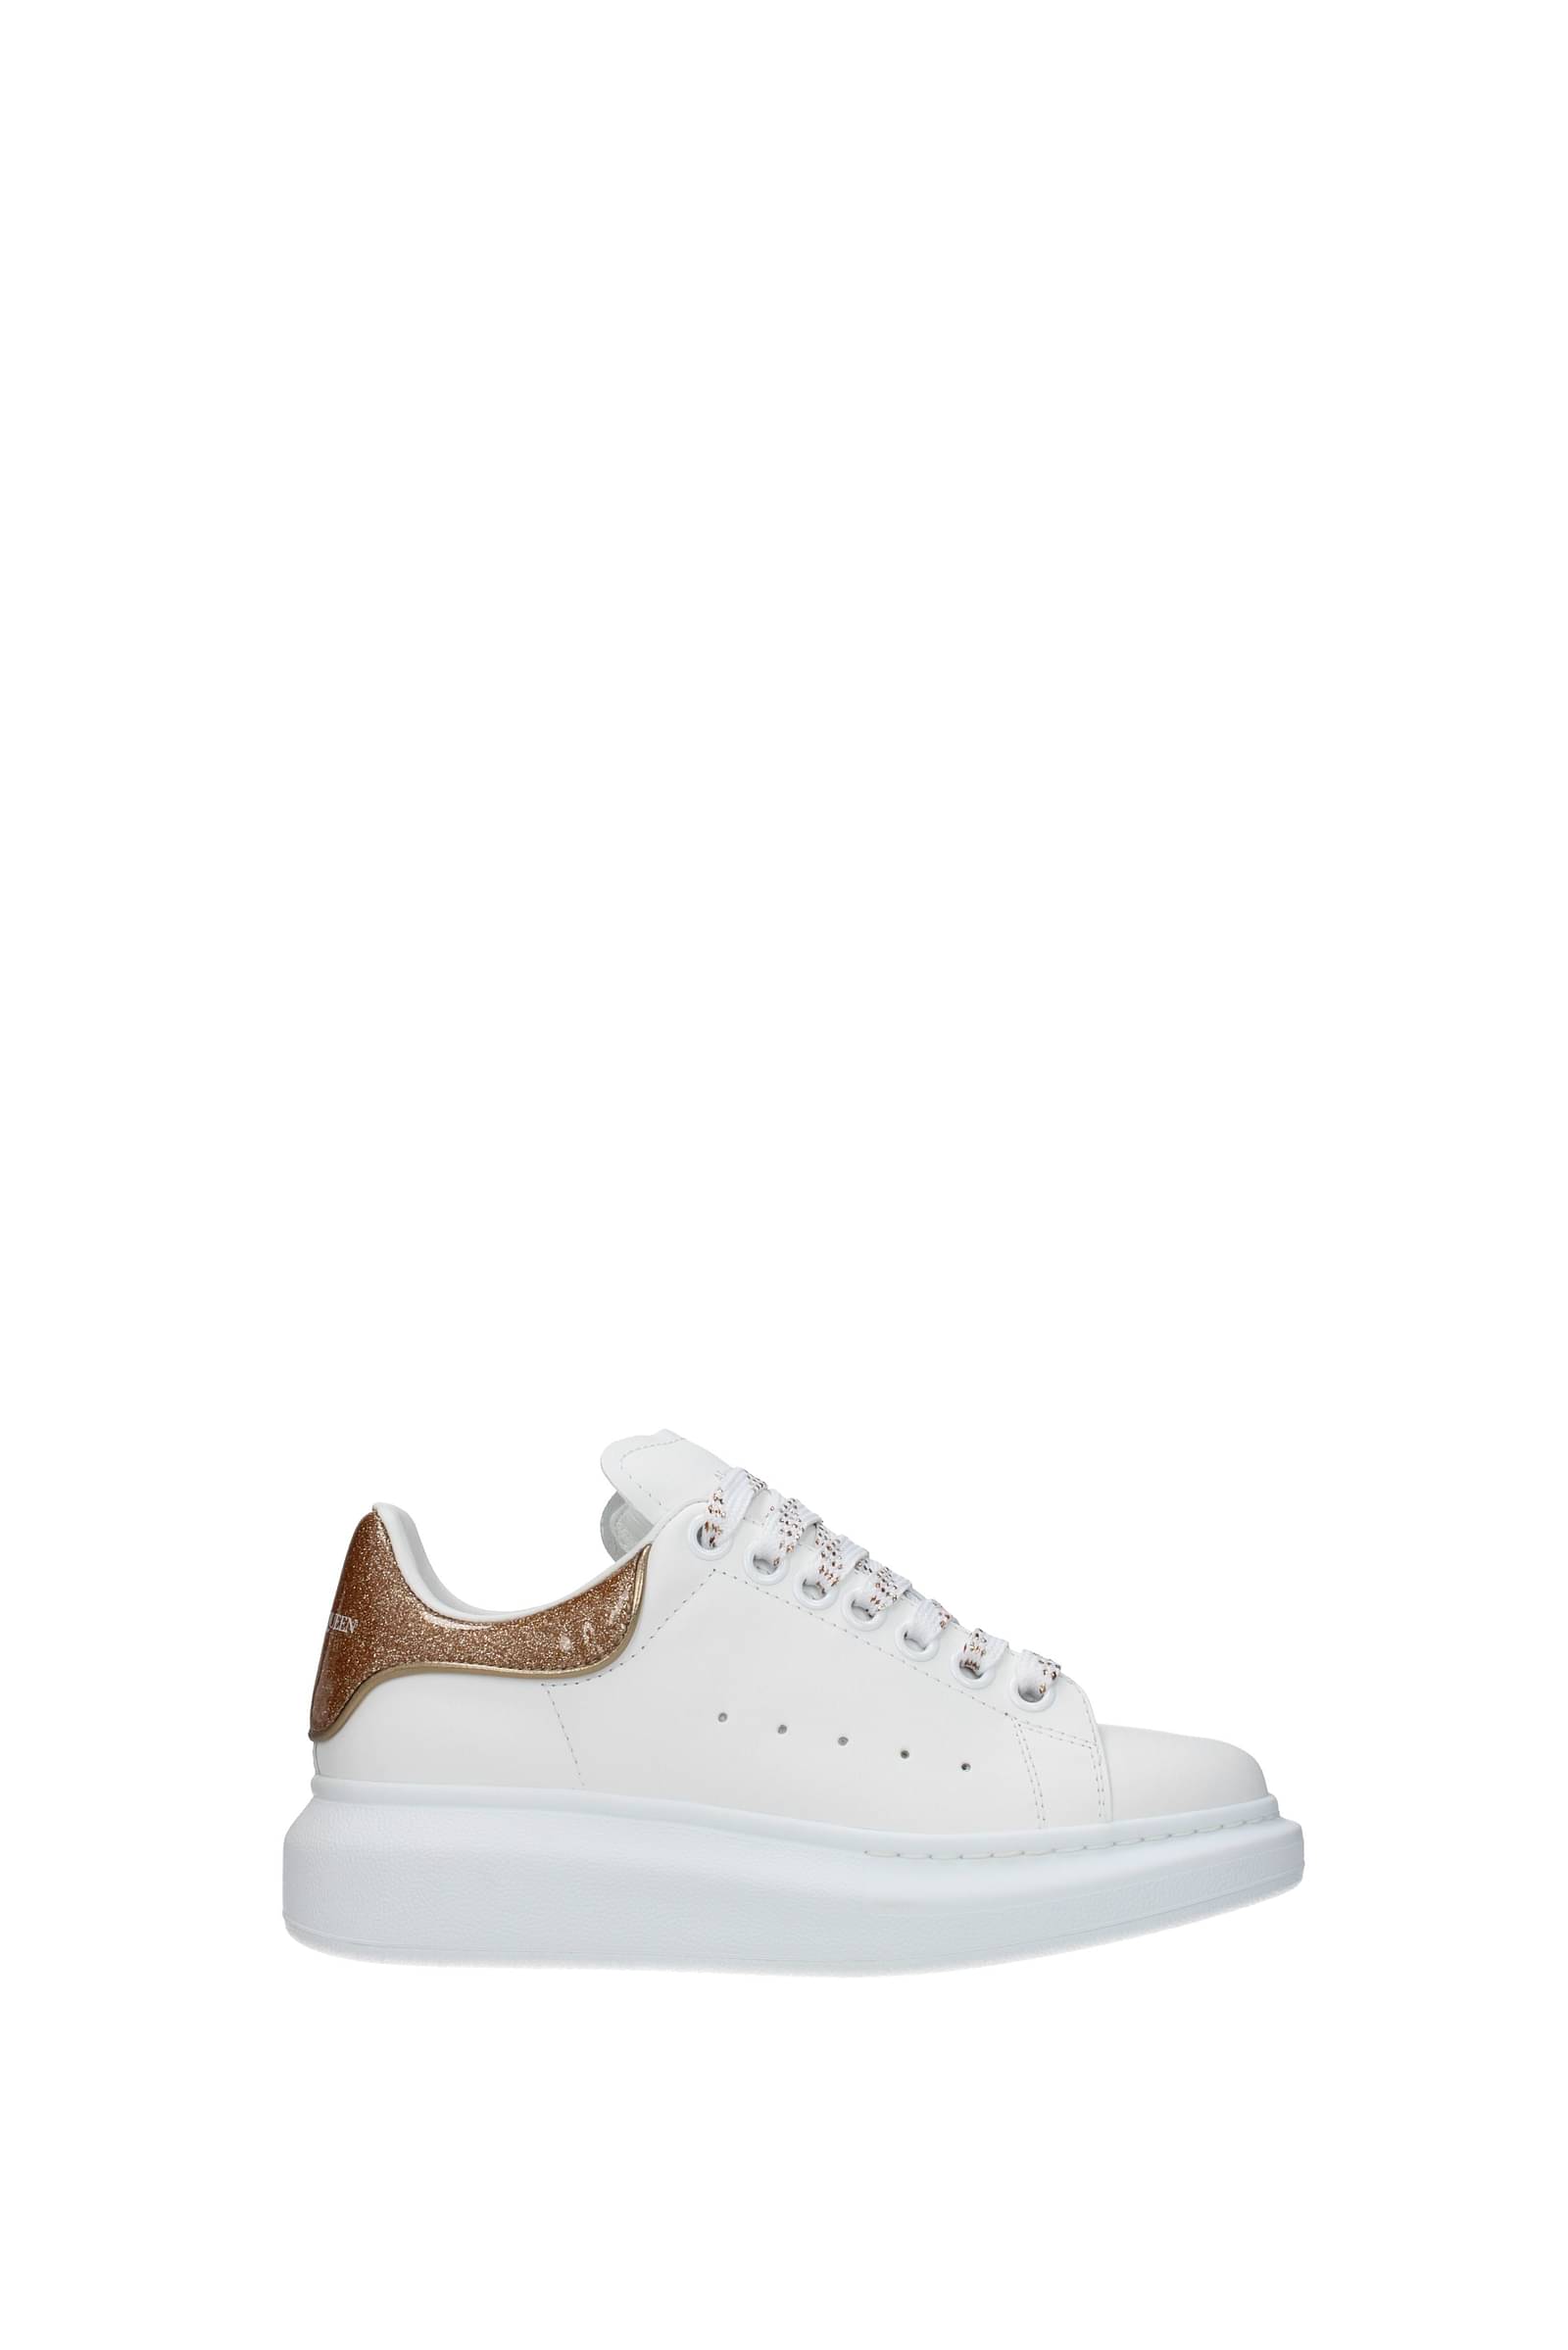 Alexander McQueen Oversized Sneaker in White & Rose Gold | FWRD